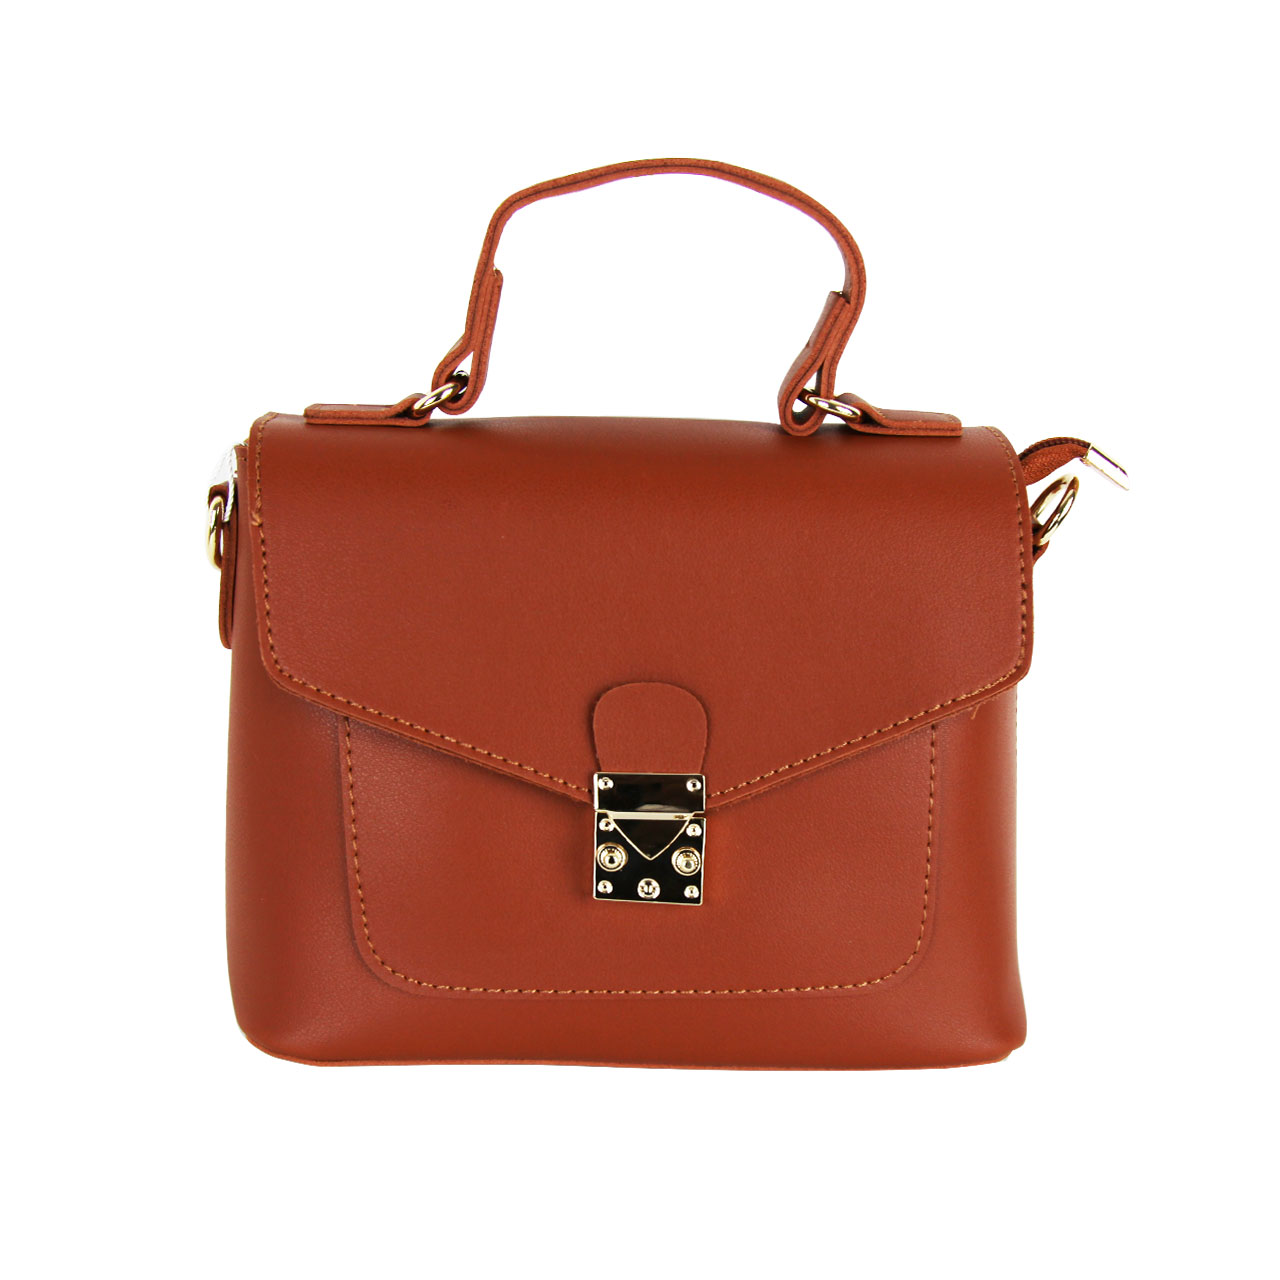 Modern Leather Straps Brown/Golden/Smog Brown Rose/Green Satchel Shoulder Bag